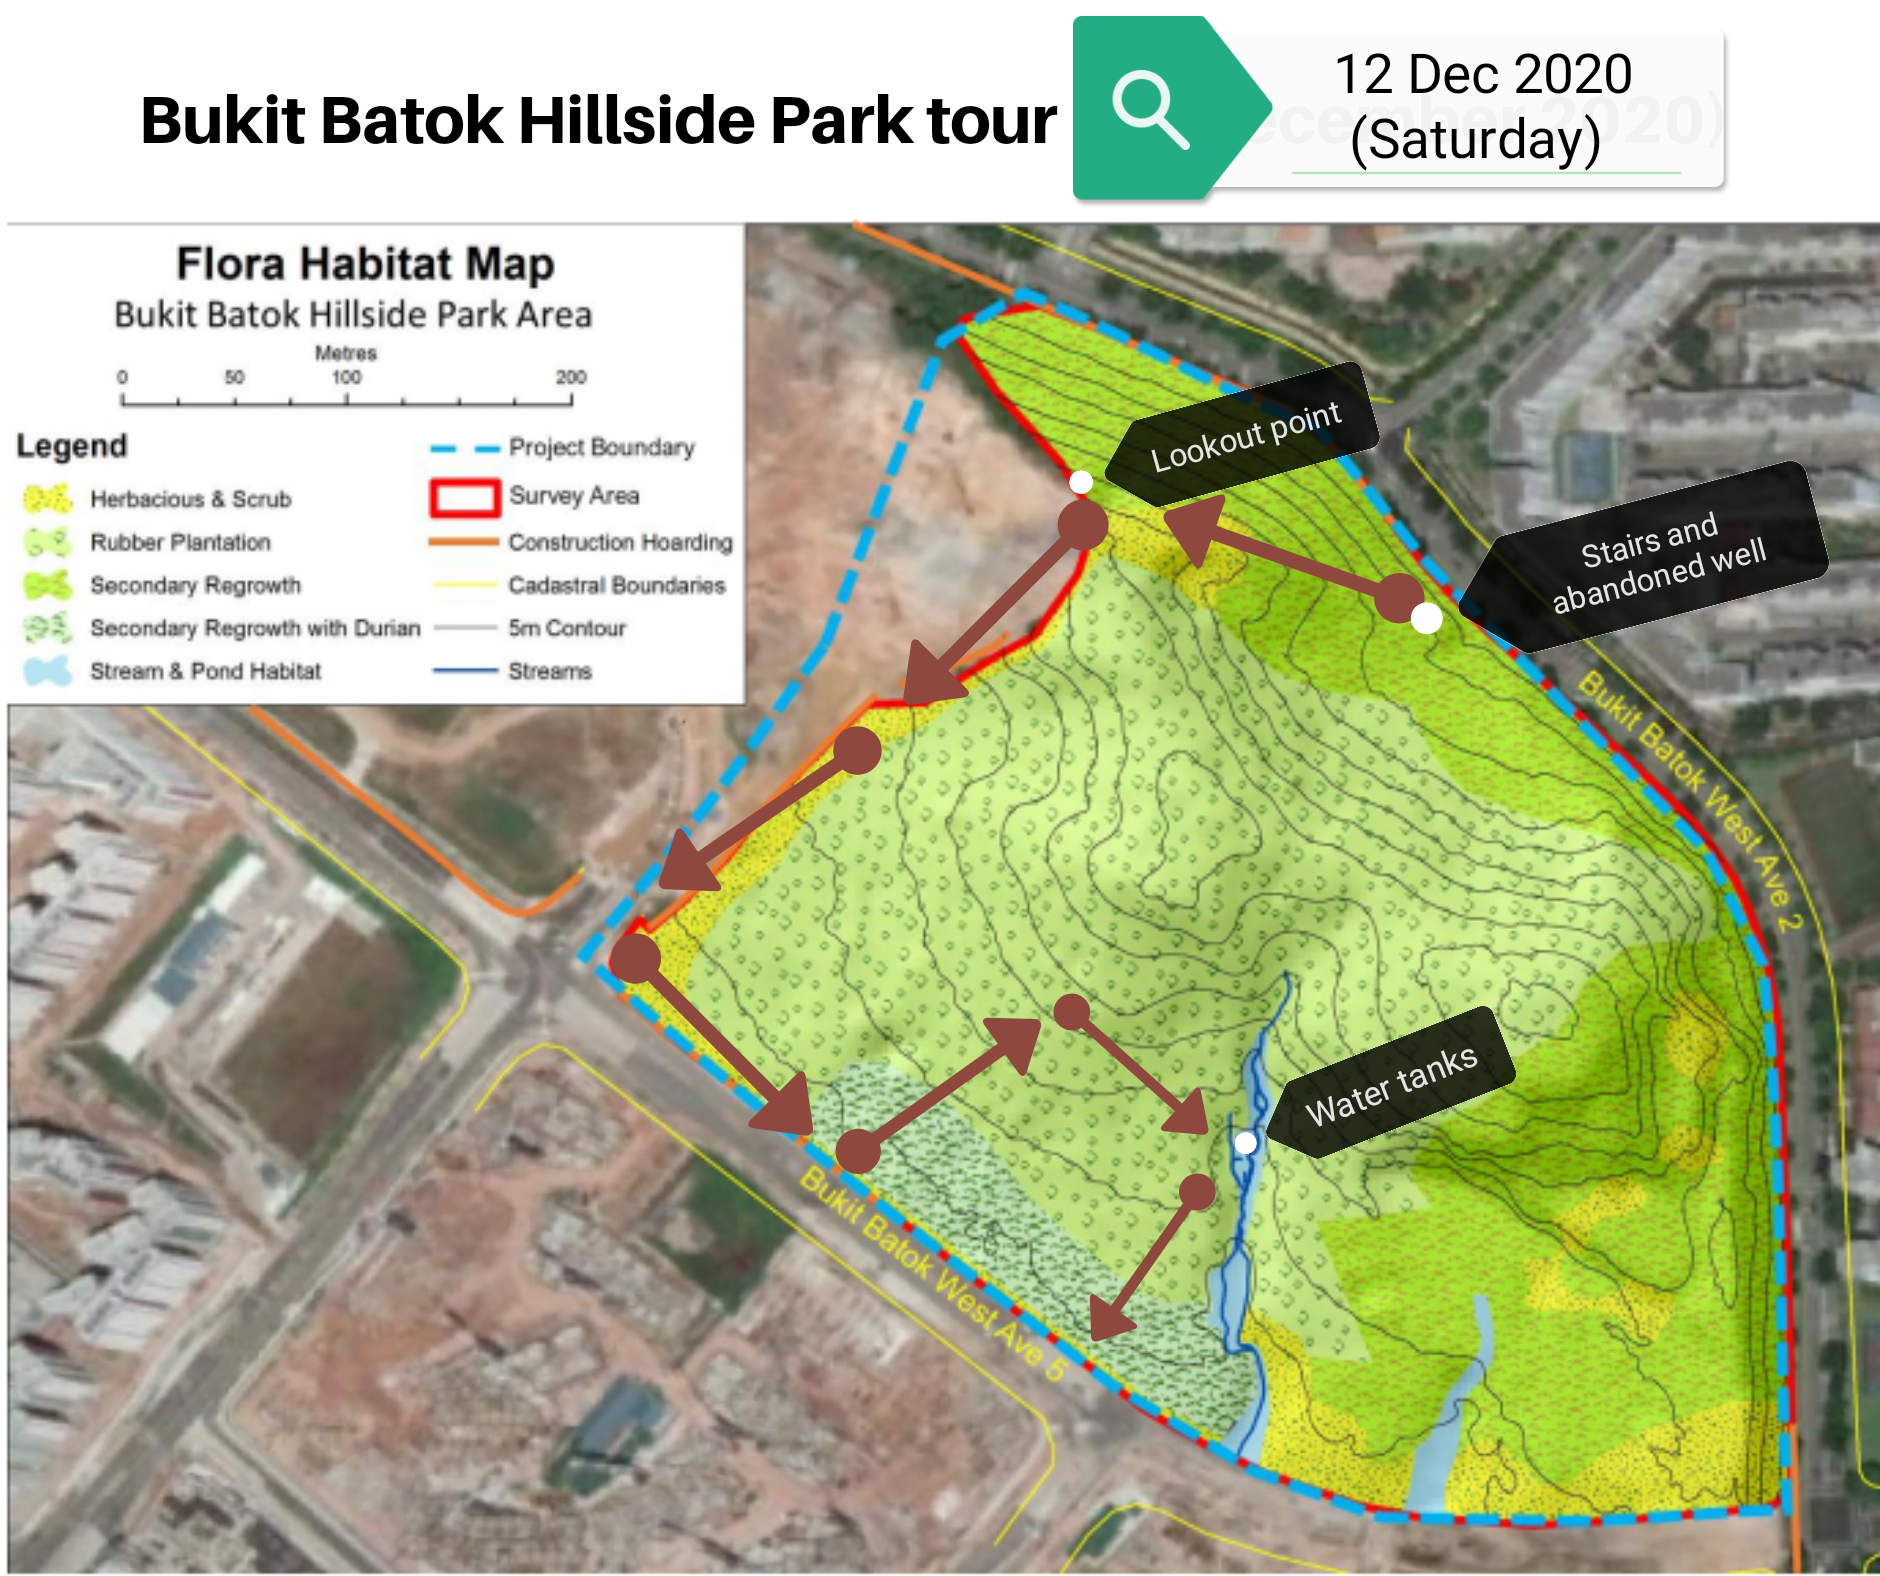 Forest tour at Bukit Batok Hillside Park area